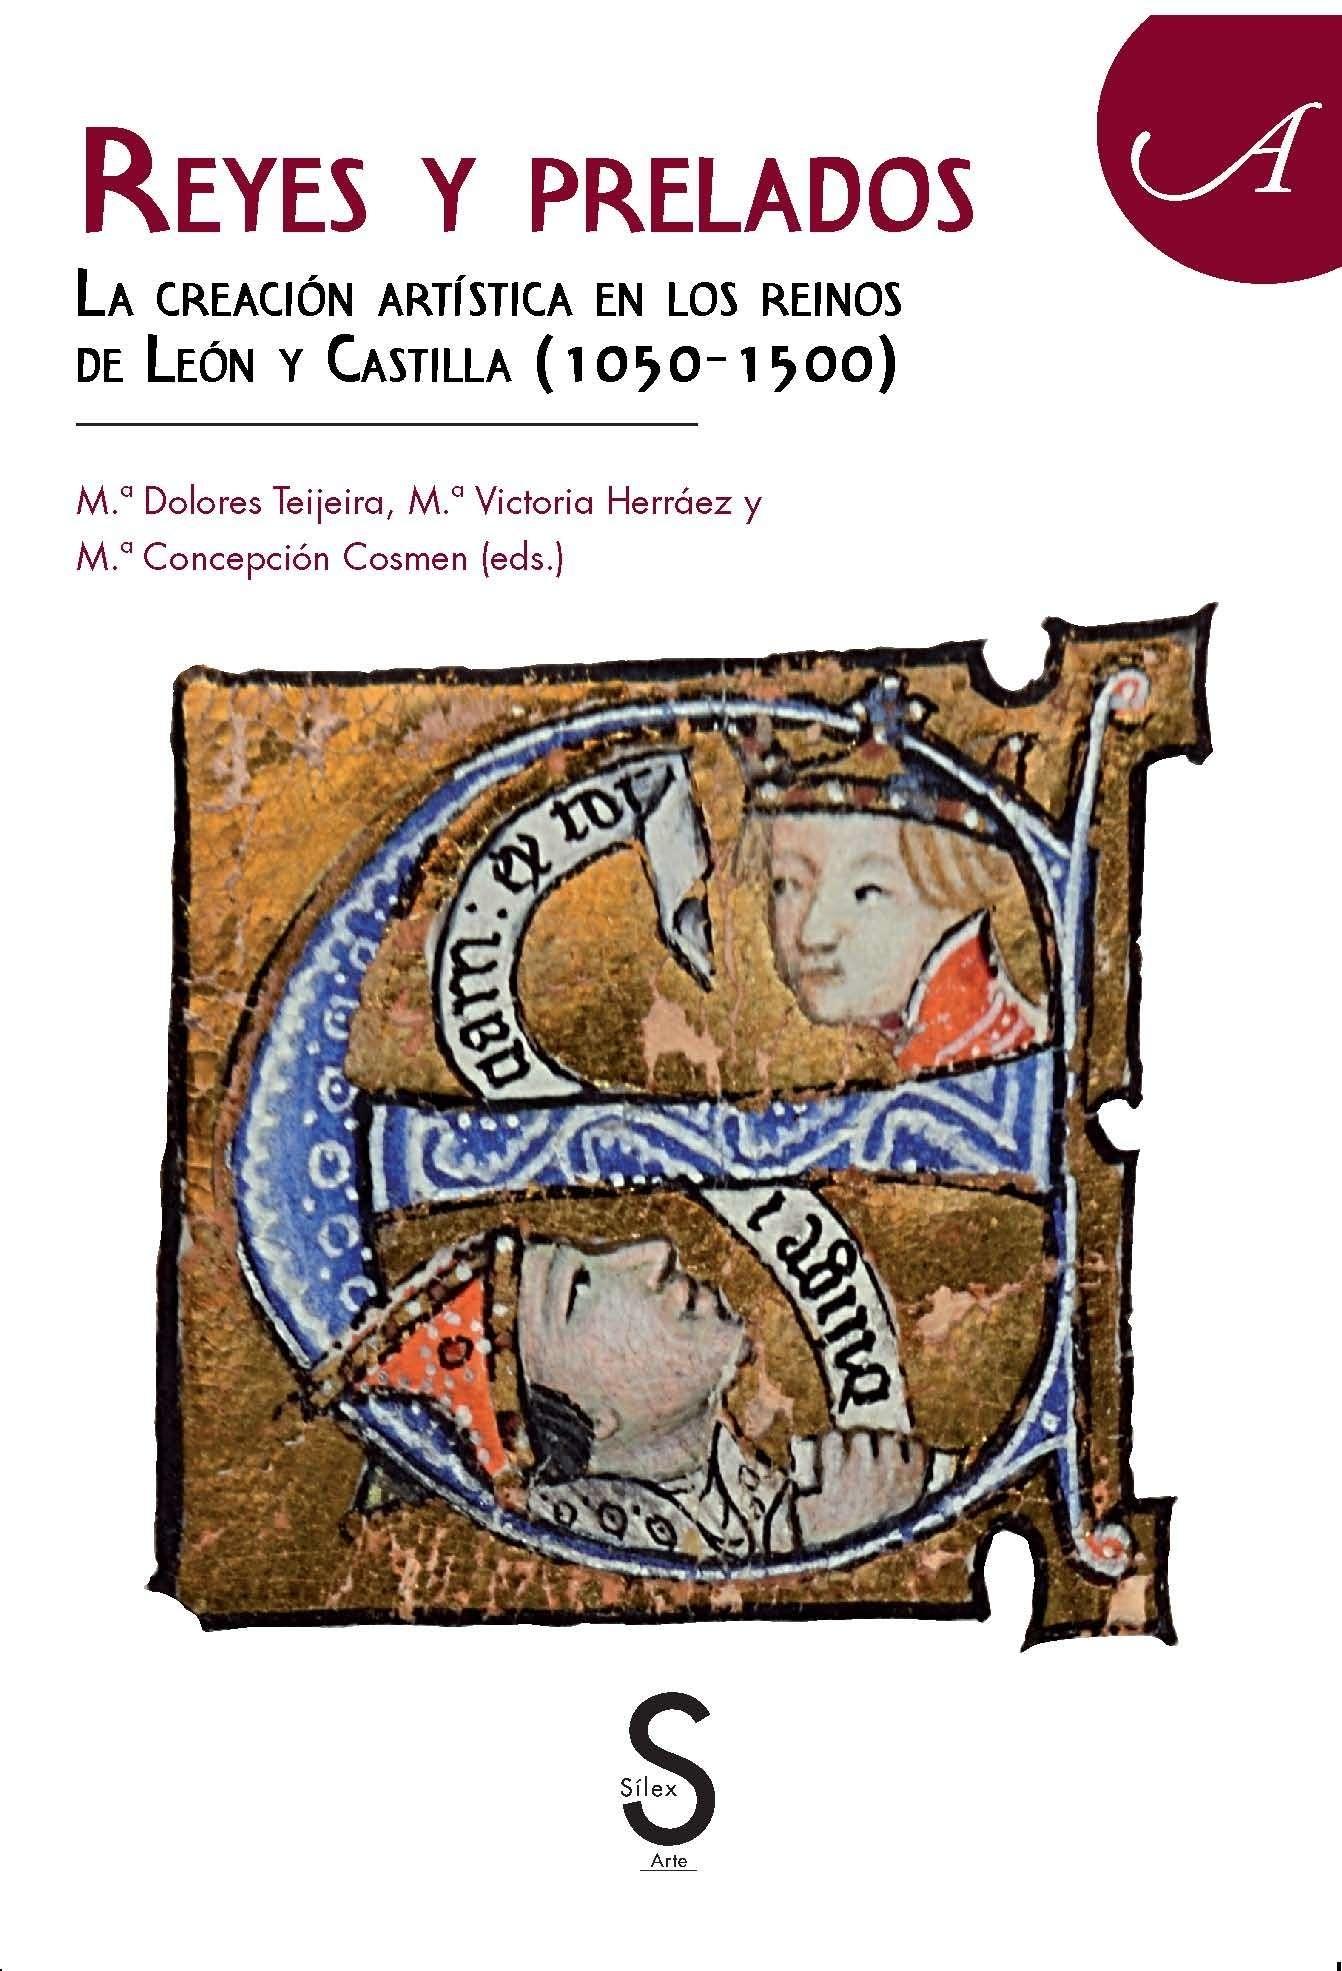 REYES Y PRELADOS. " LA CREACION ARTISTIC A EN LOS REINOS DE LEON Y CASTILLA ( 1050-1500)